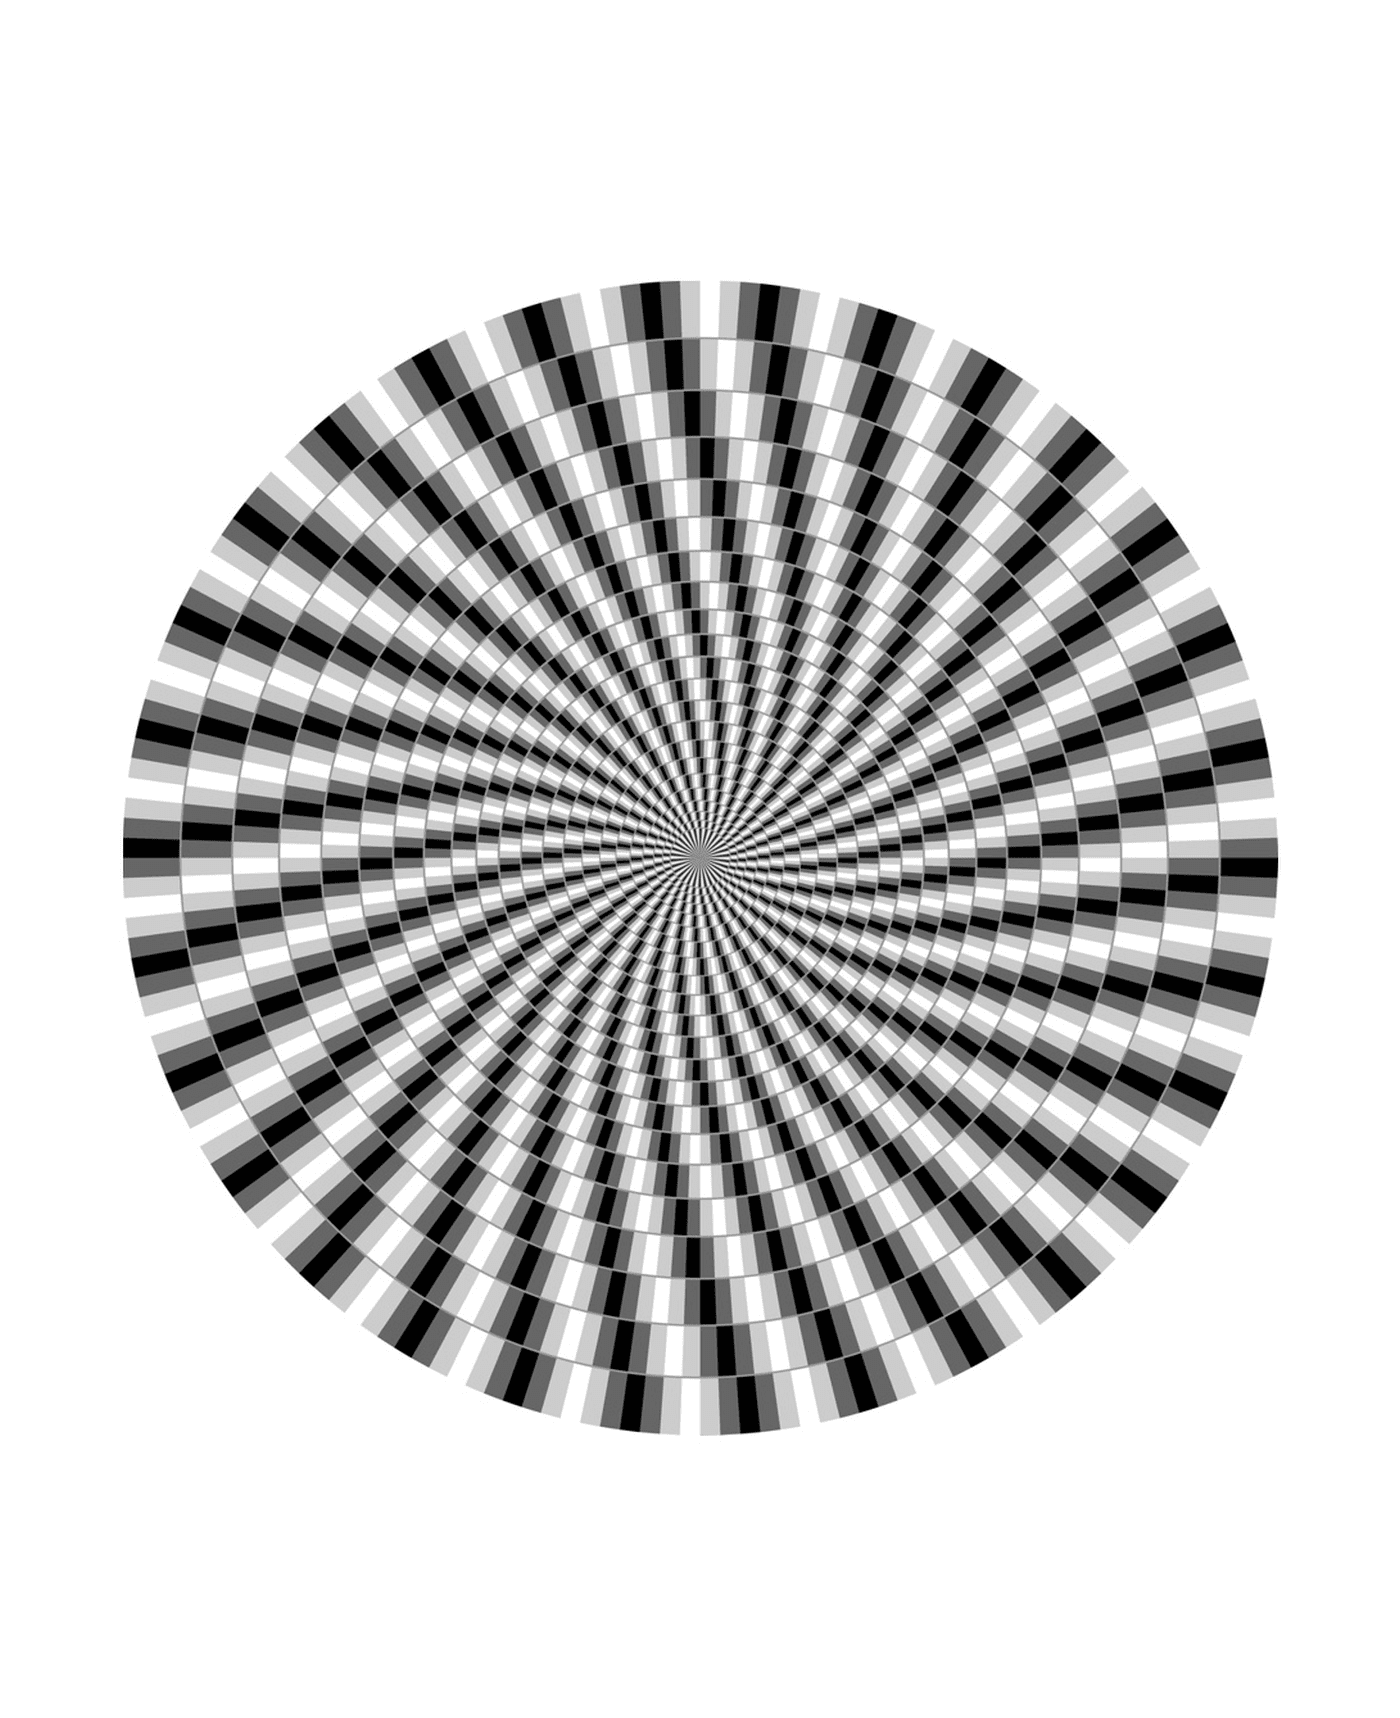   une illusion d'optique 